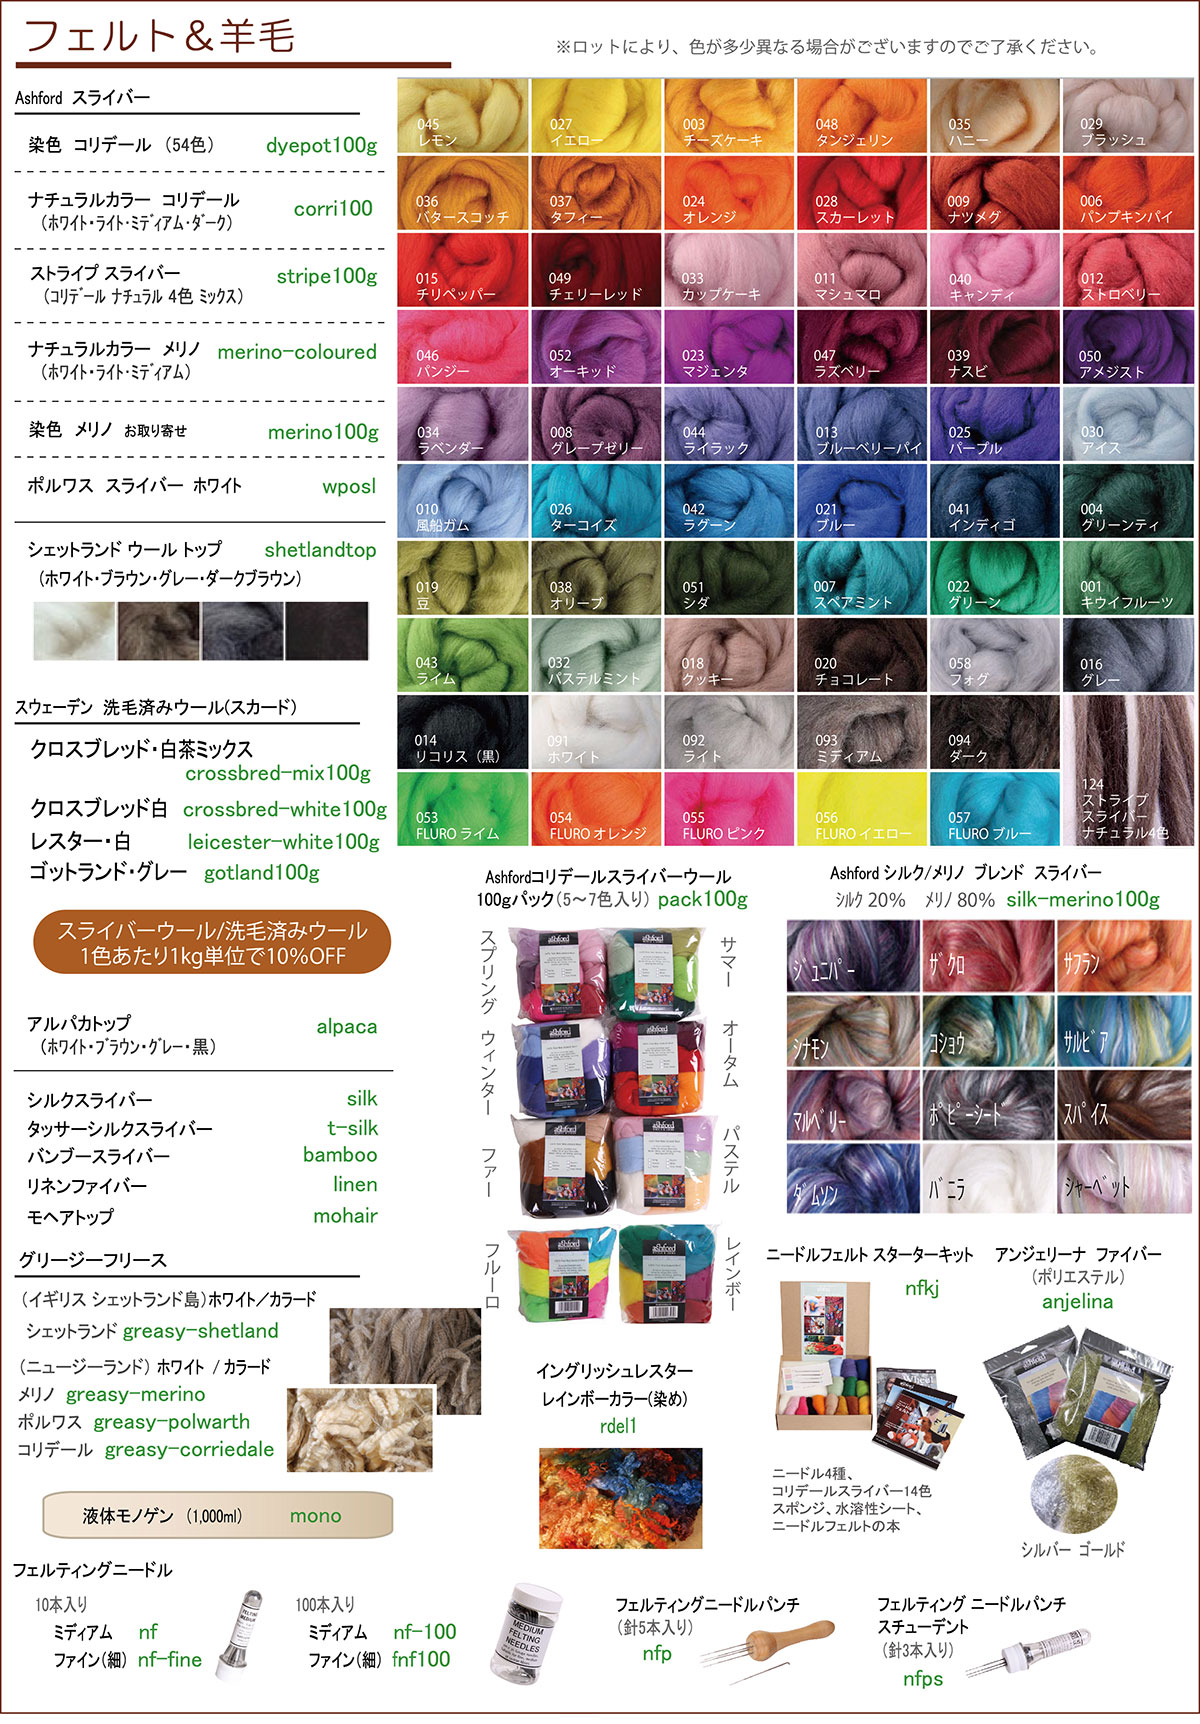 フェルト&羊毛 商品カタログ